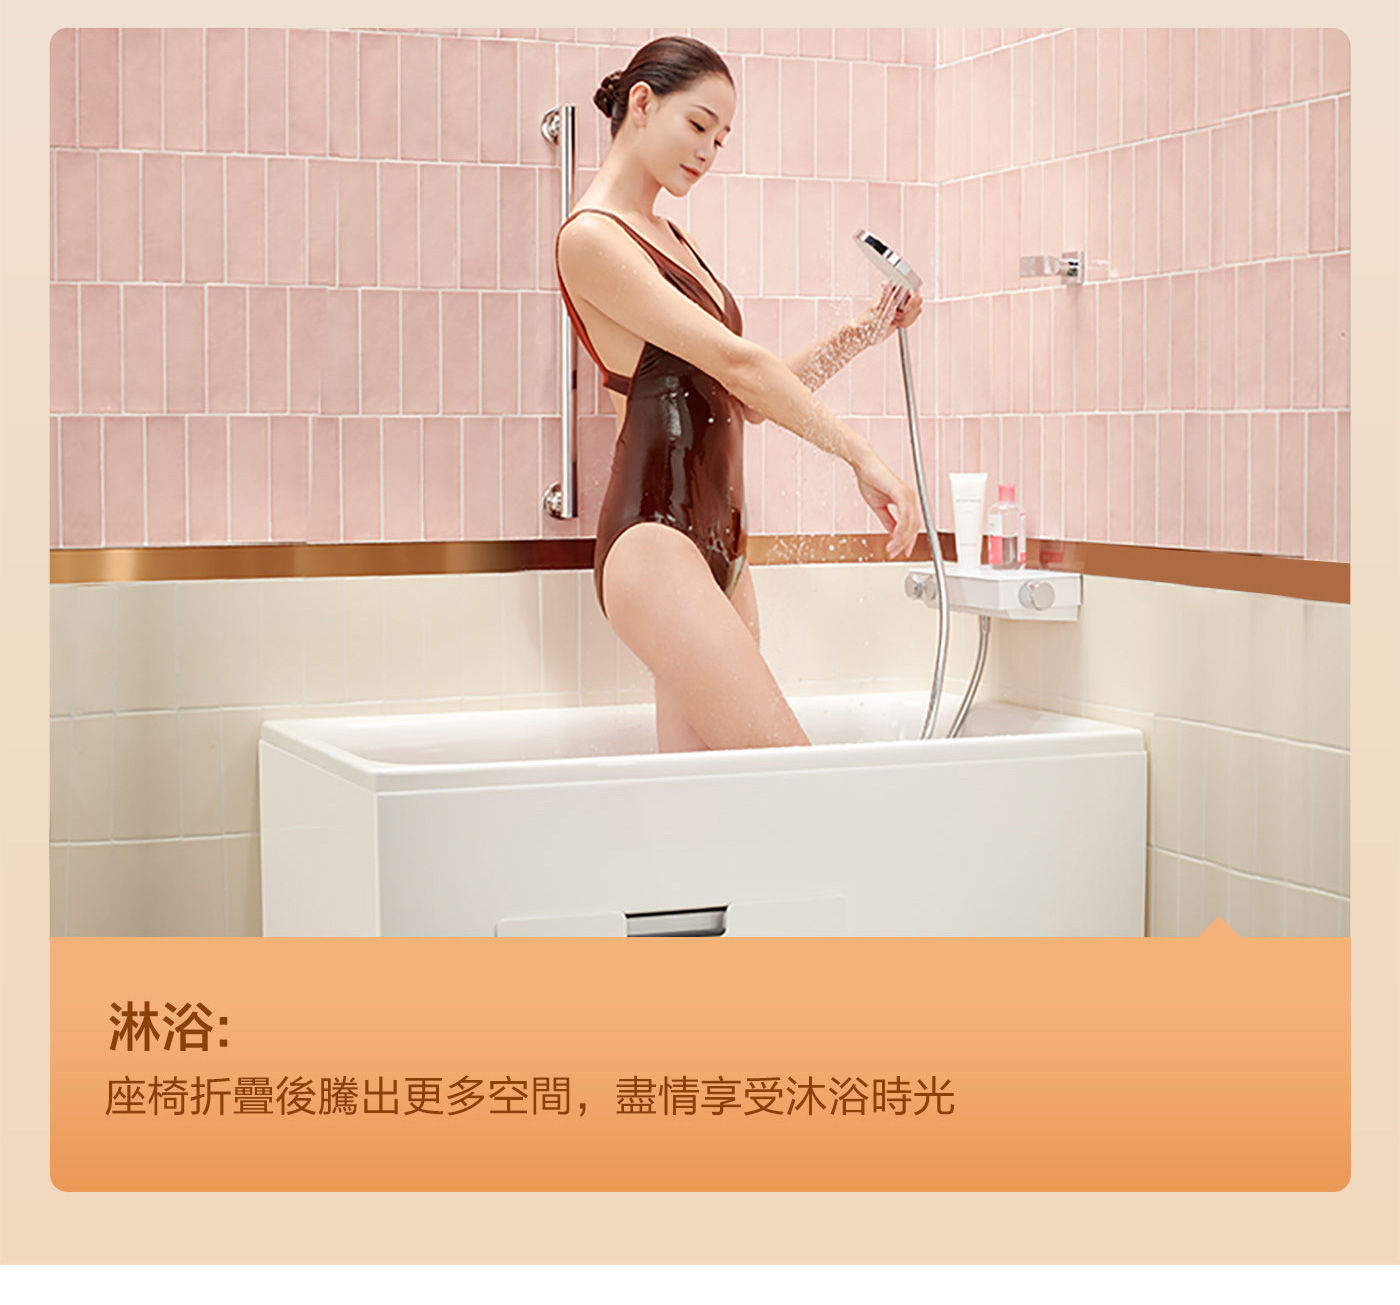 KOHLER 1.2公尺座臥式浴缸左角位 帶腳蹬+外排水可安裝於淋浴室內充分利用空間